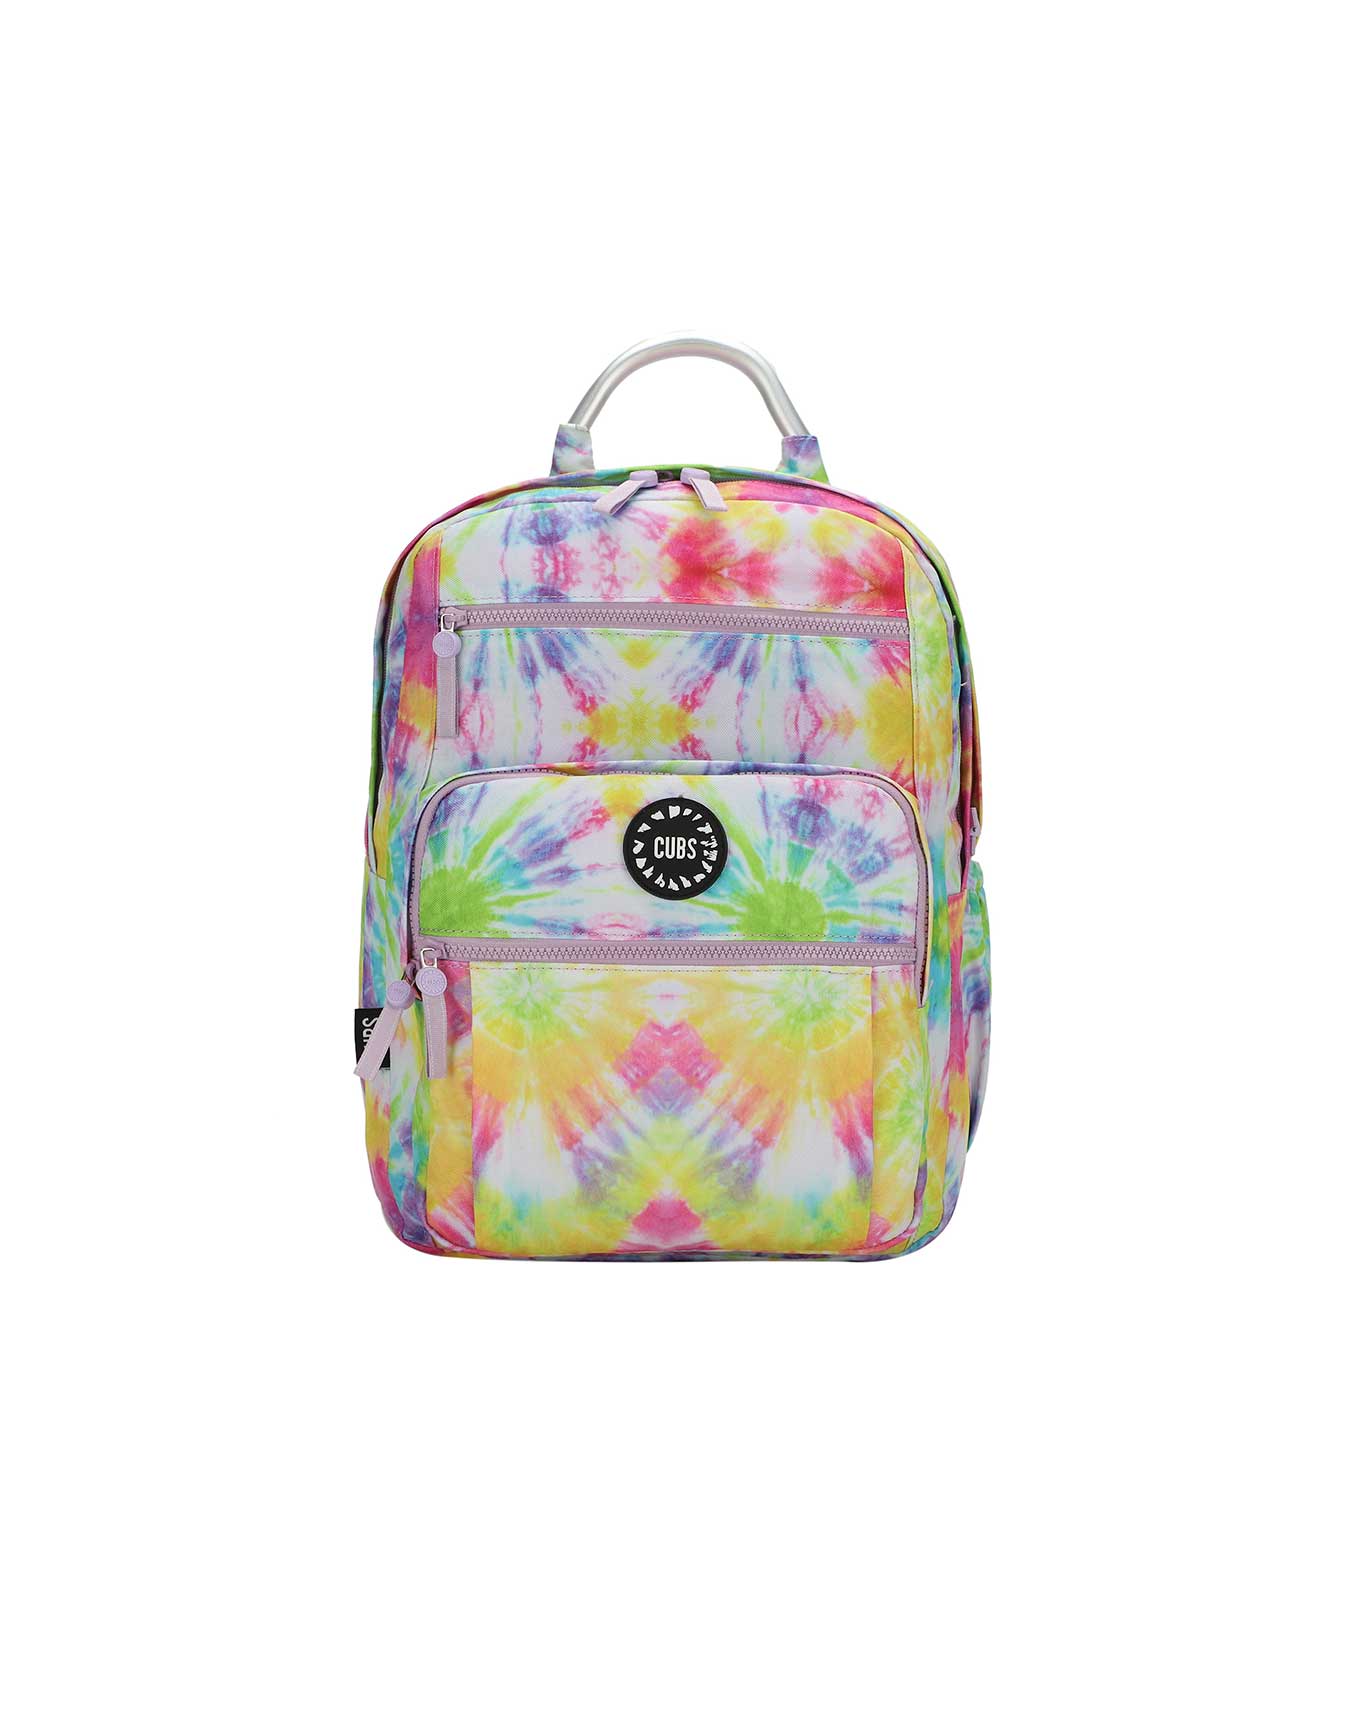 Sunrays Tie Dye Senior Student backpack